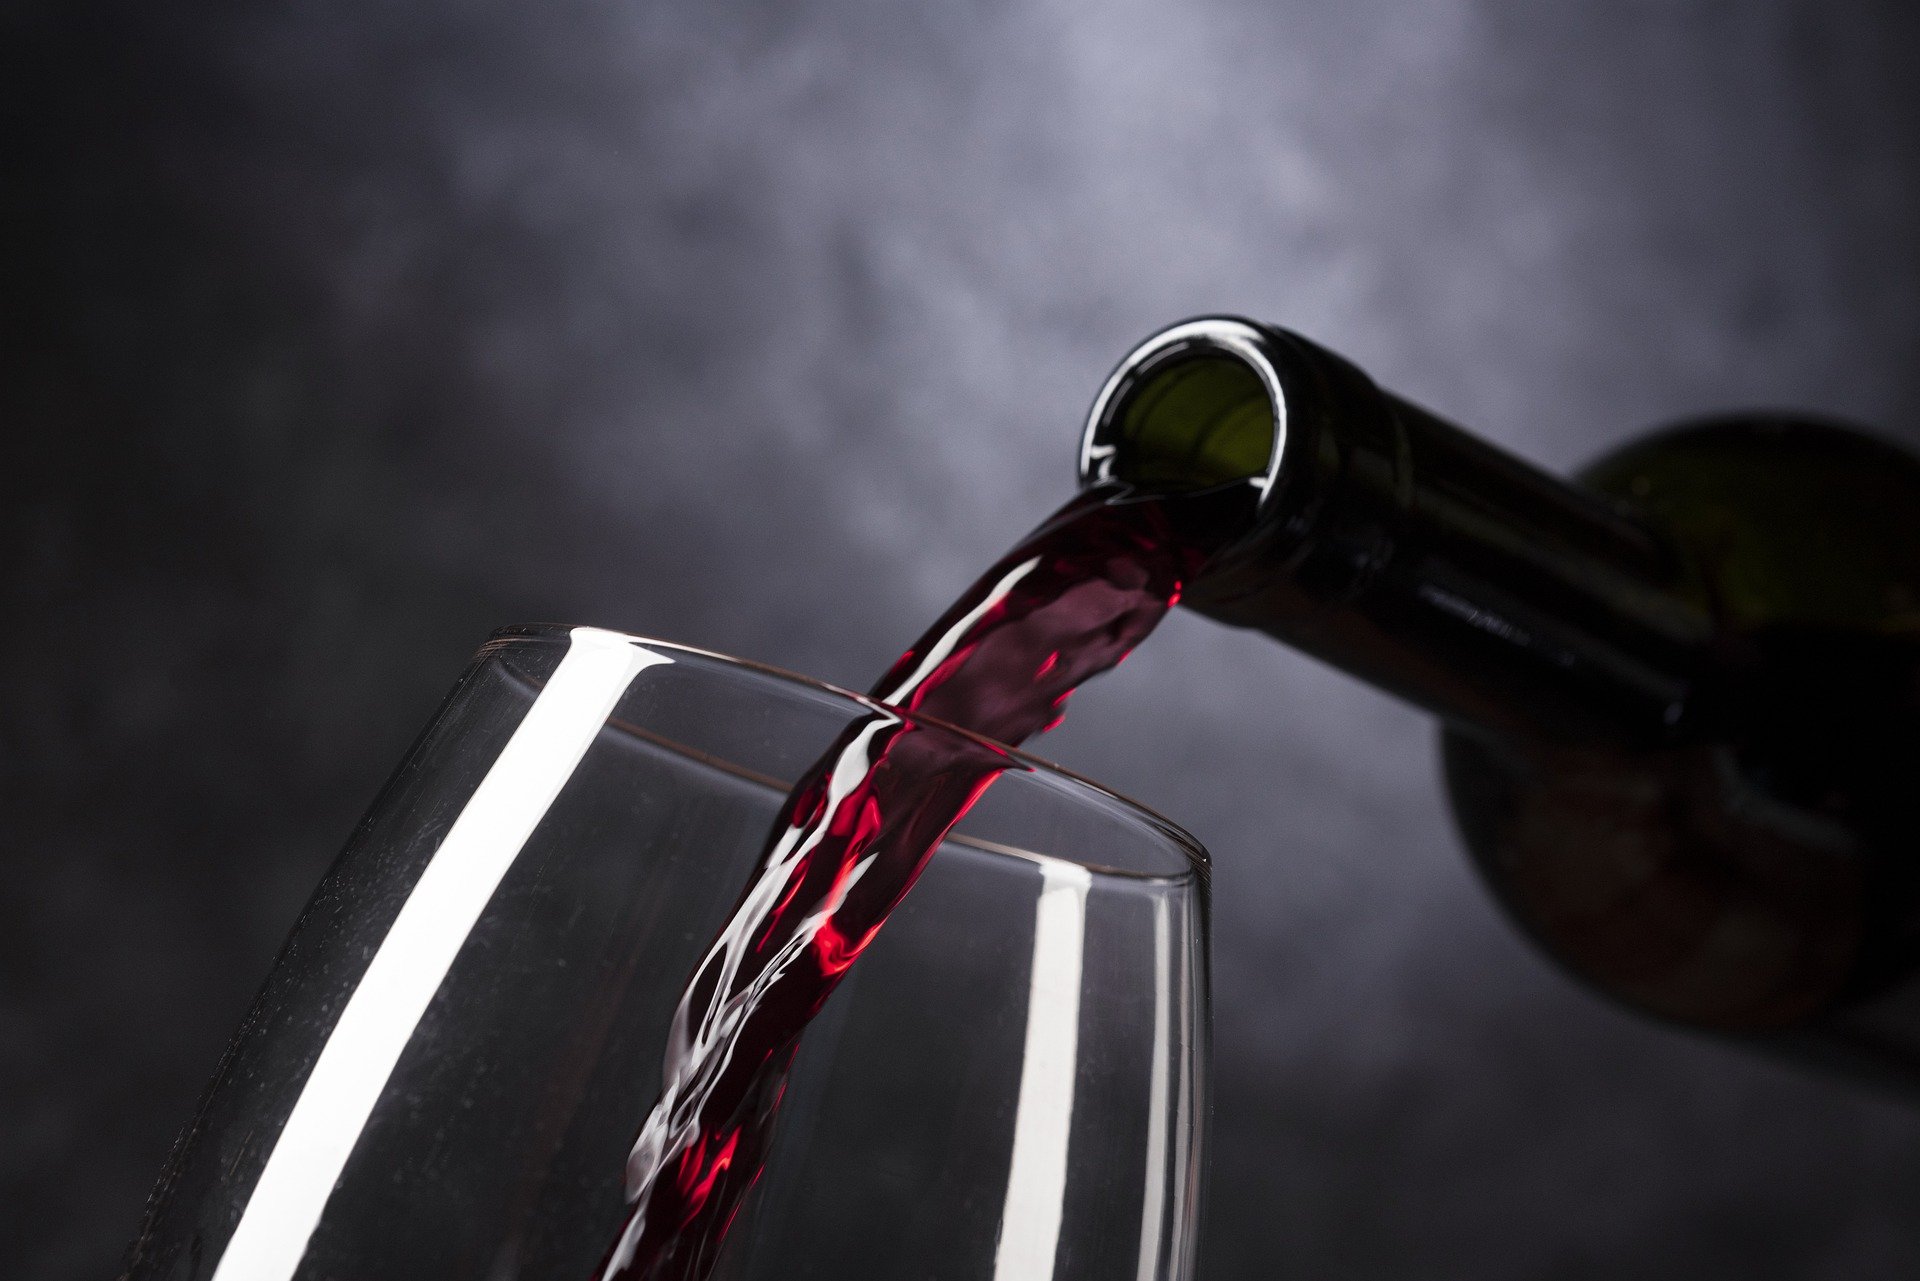 Promozione vino mercati internazionali, pubblicato bando per accedere ai finanziamenti